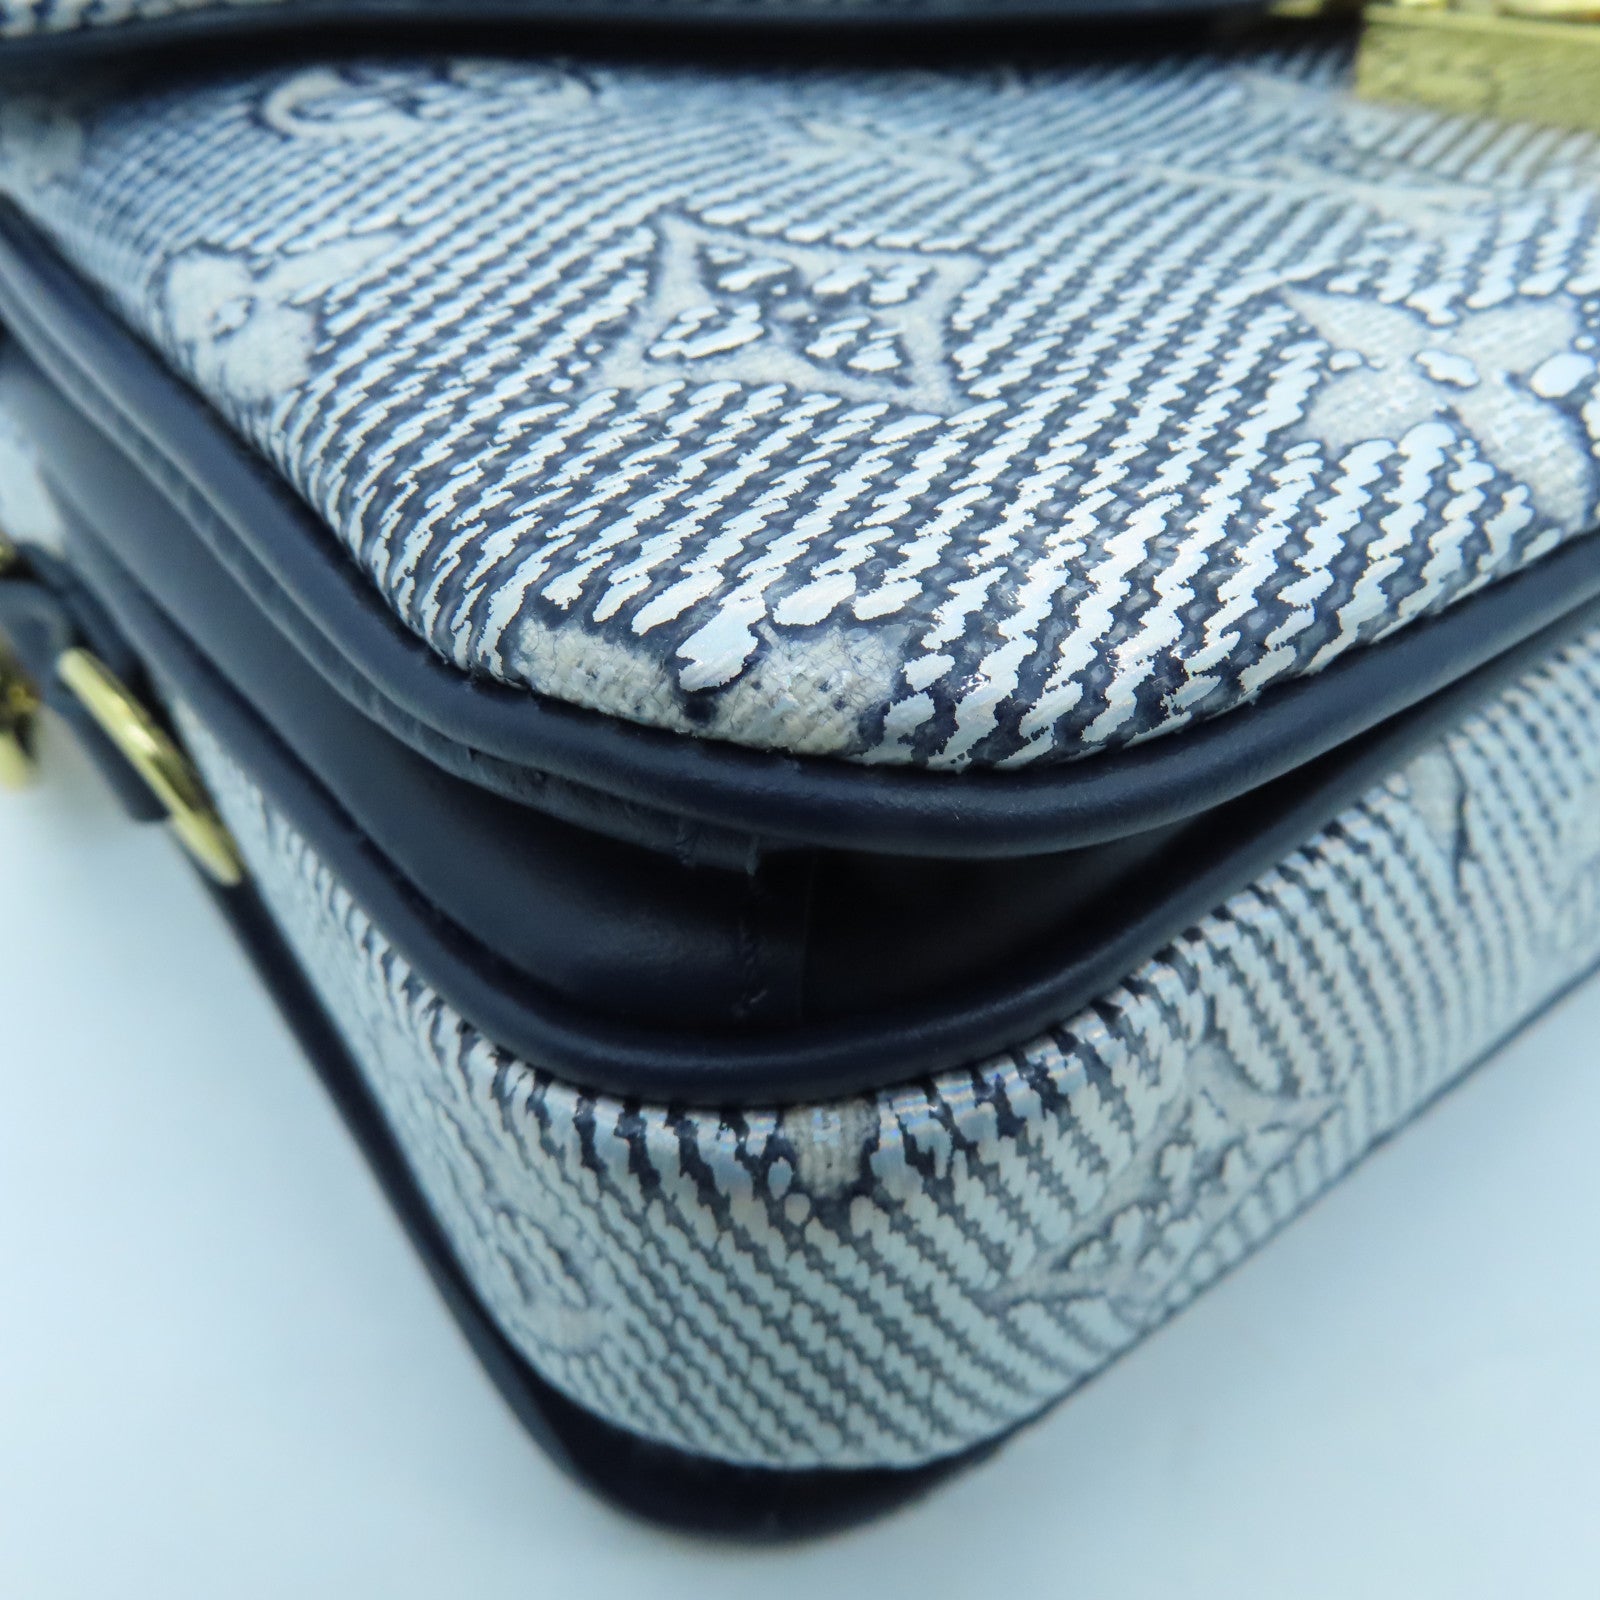 LOUIS VUITTON Monoglam Pochette Metis East West gold buckle handle shoulder  bag dual-use blue